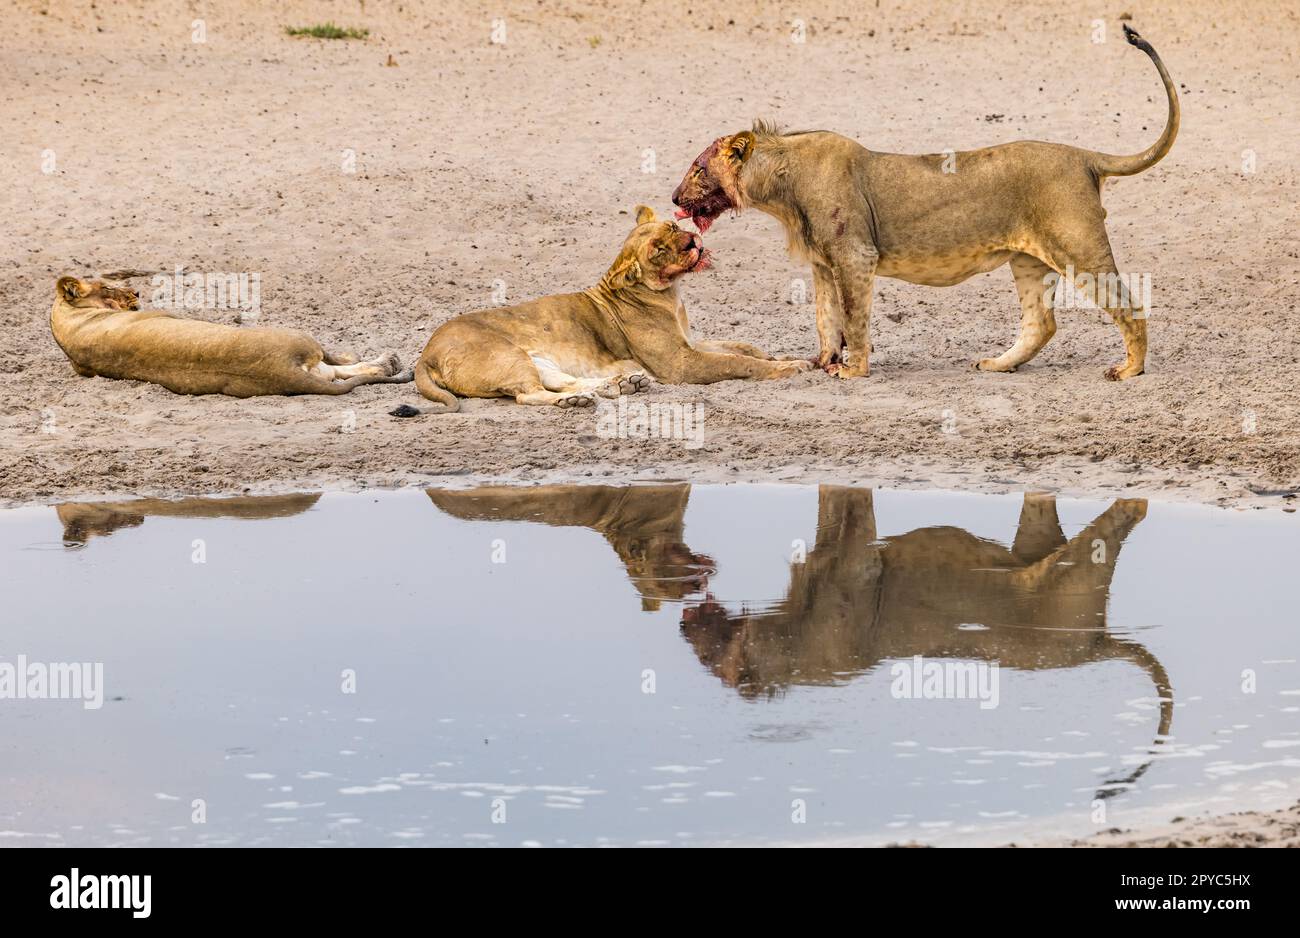 Eine Löwin leckt das Gesicht ihres jungen männlichen Nachwuchses nach einem Mord an einem Wasserloch in der Kalahari-Wüste, Botswana, Afrika Stockfoto